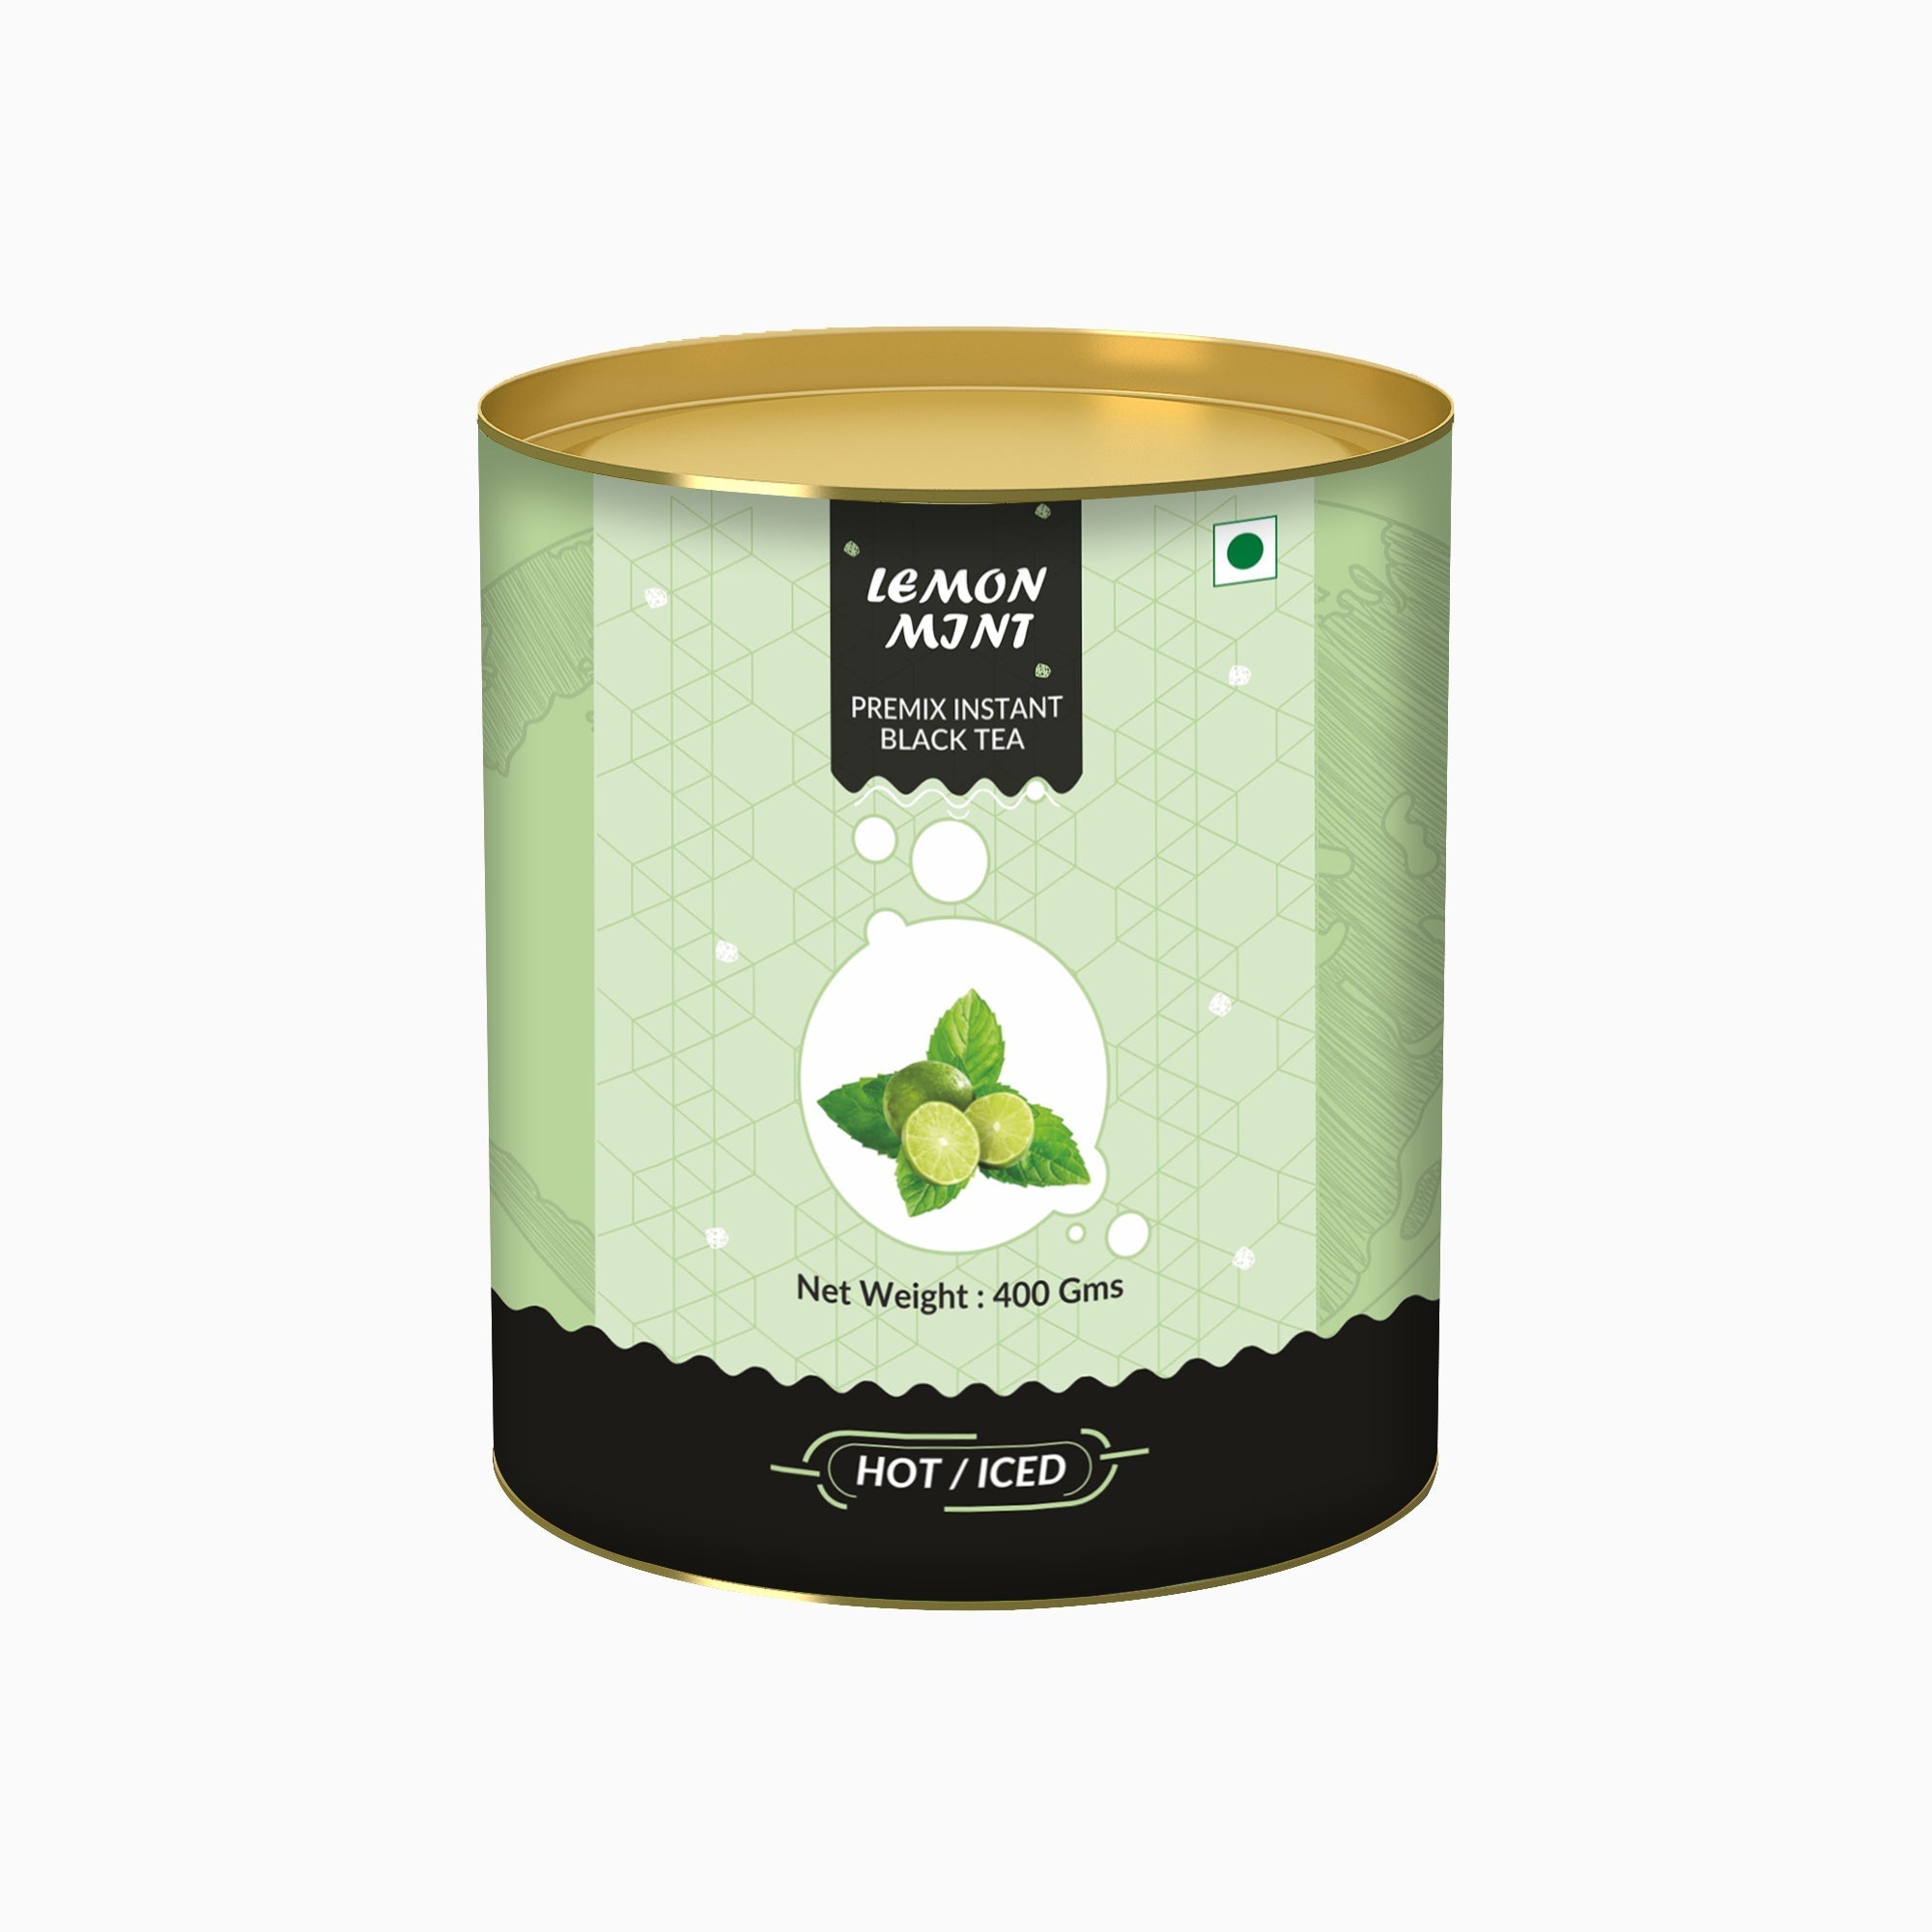 Lemon &mint Flavored Instant Black Tea - 400 gms